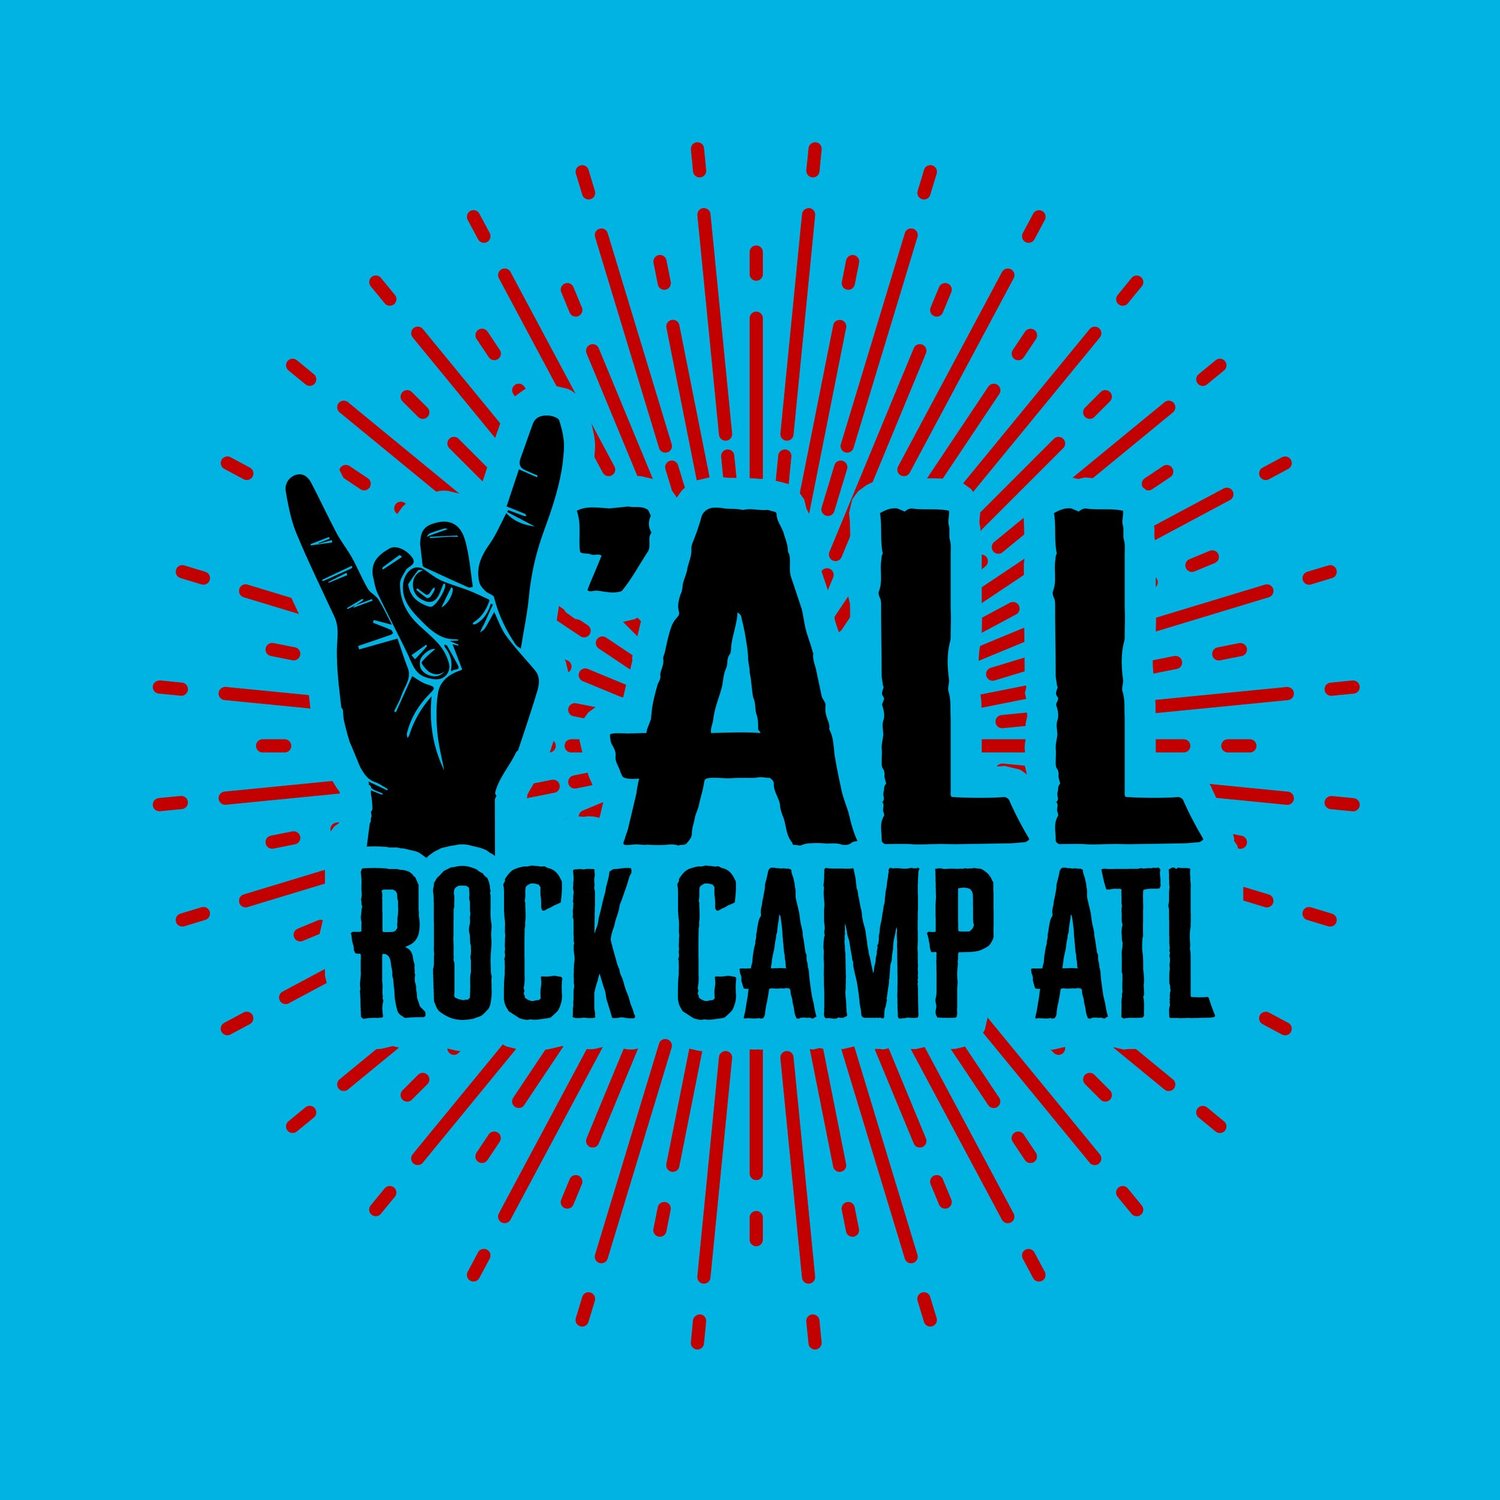  Y'all Rock Camp ATL